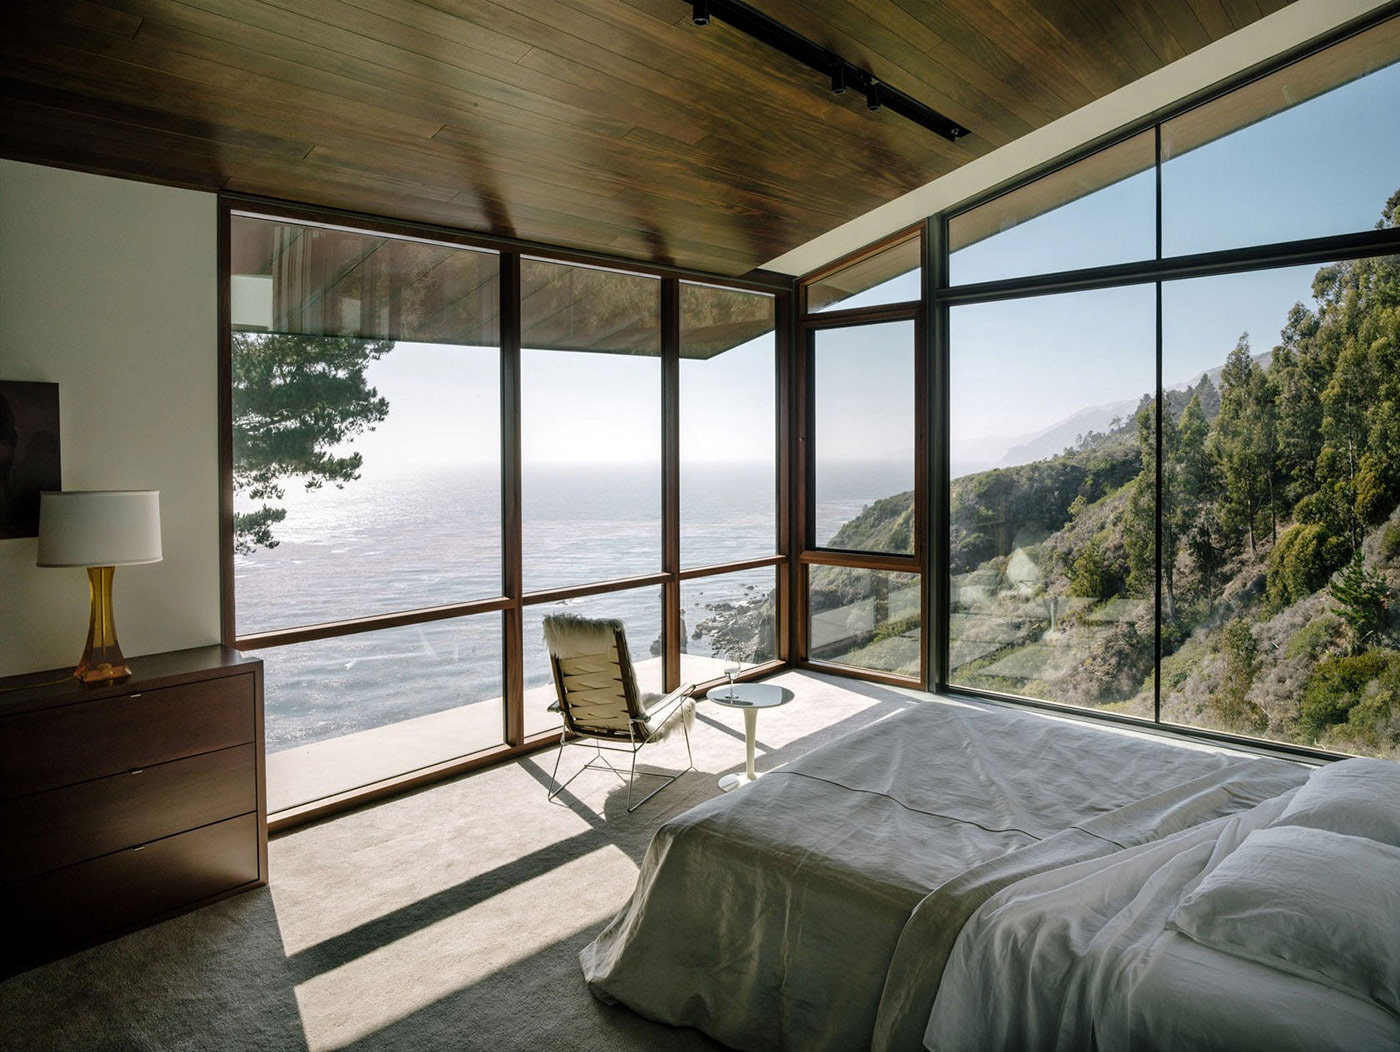 Schlafzimmerinterieur in einem Landhaus mit Panoramafenstern